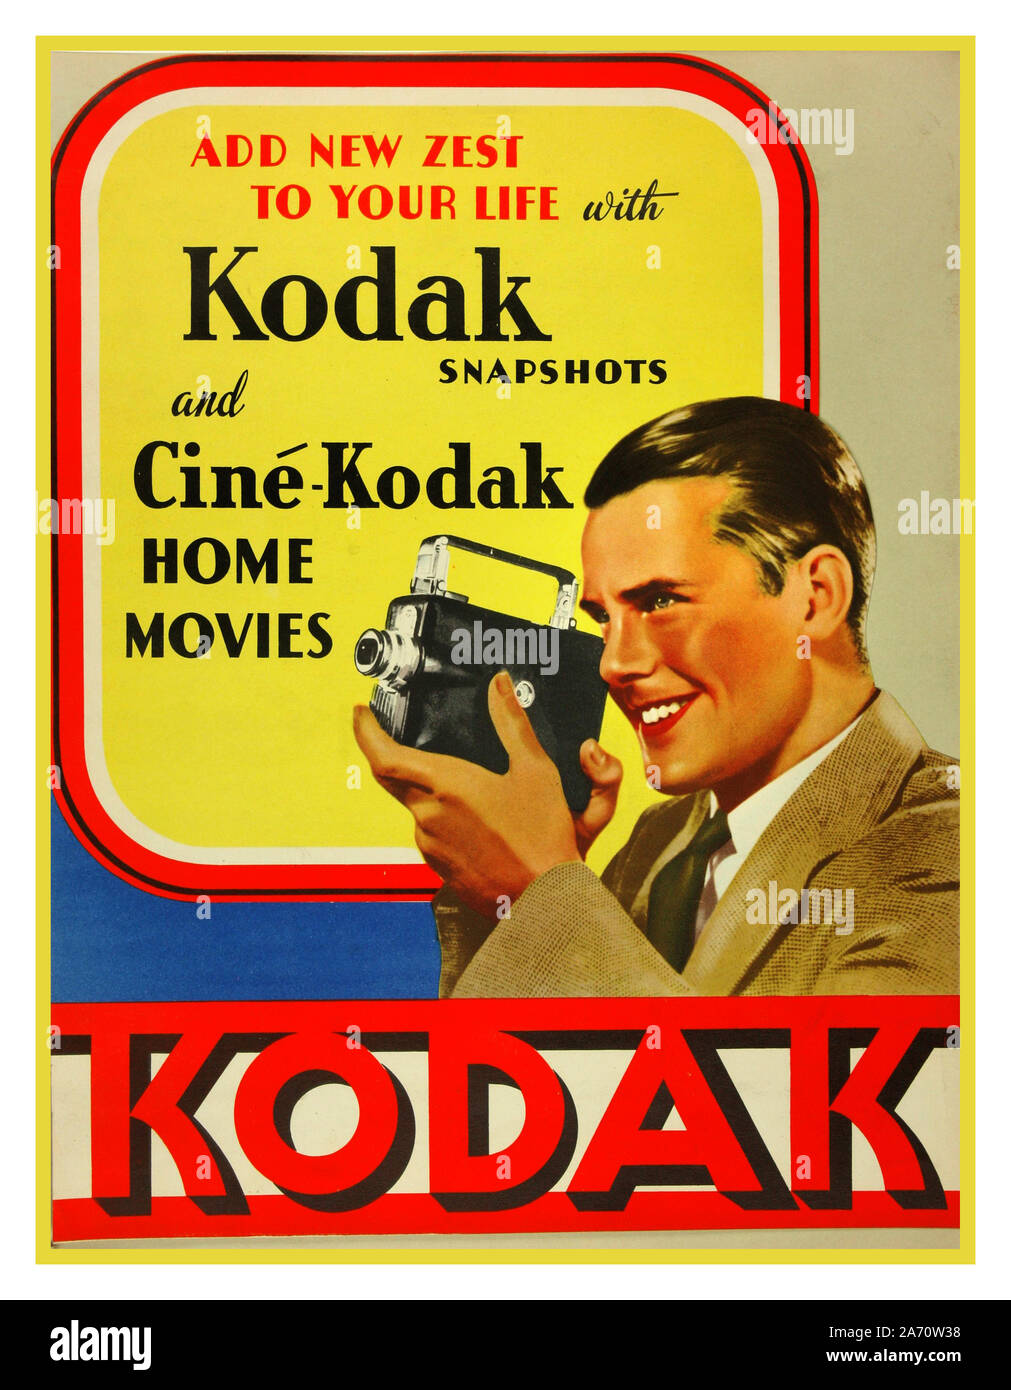 Histórico de KODAK 1920 Home películas Kodak película cine retro Vintage 1900 cartel de anuncio de la legendaria Ciné-Kodak 8mm películas caseras y instantáneas Kodak 'añadir nuevo ímpetu a su vida". Foto de stock